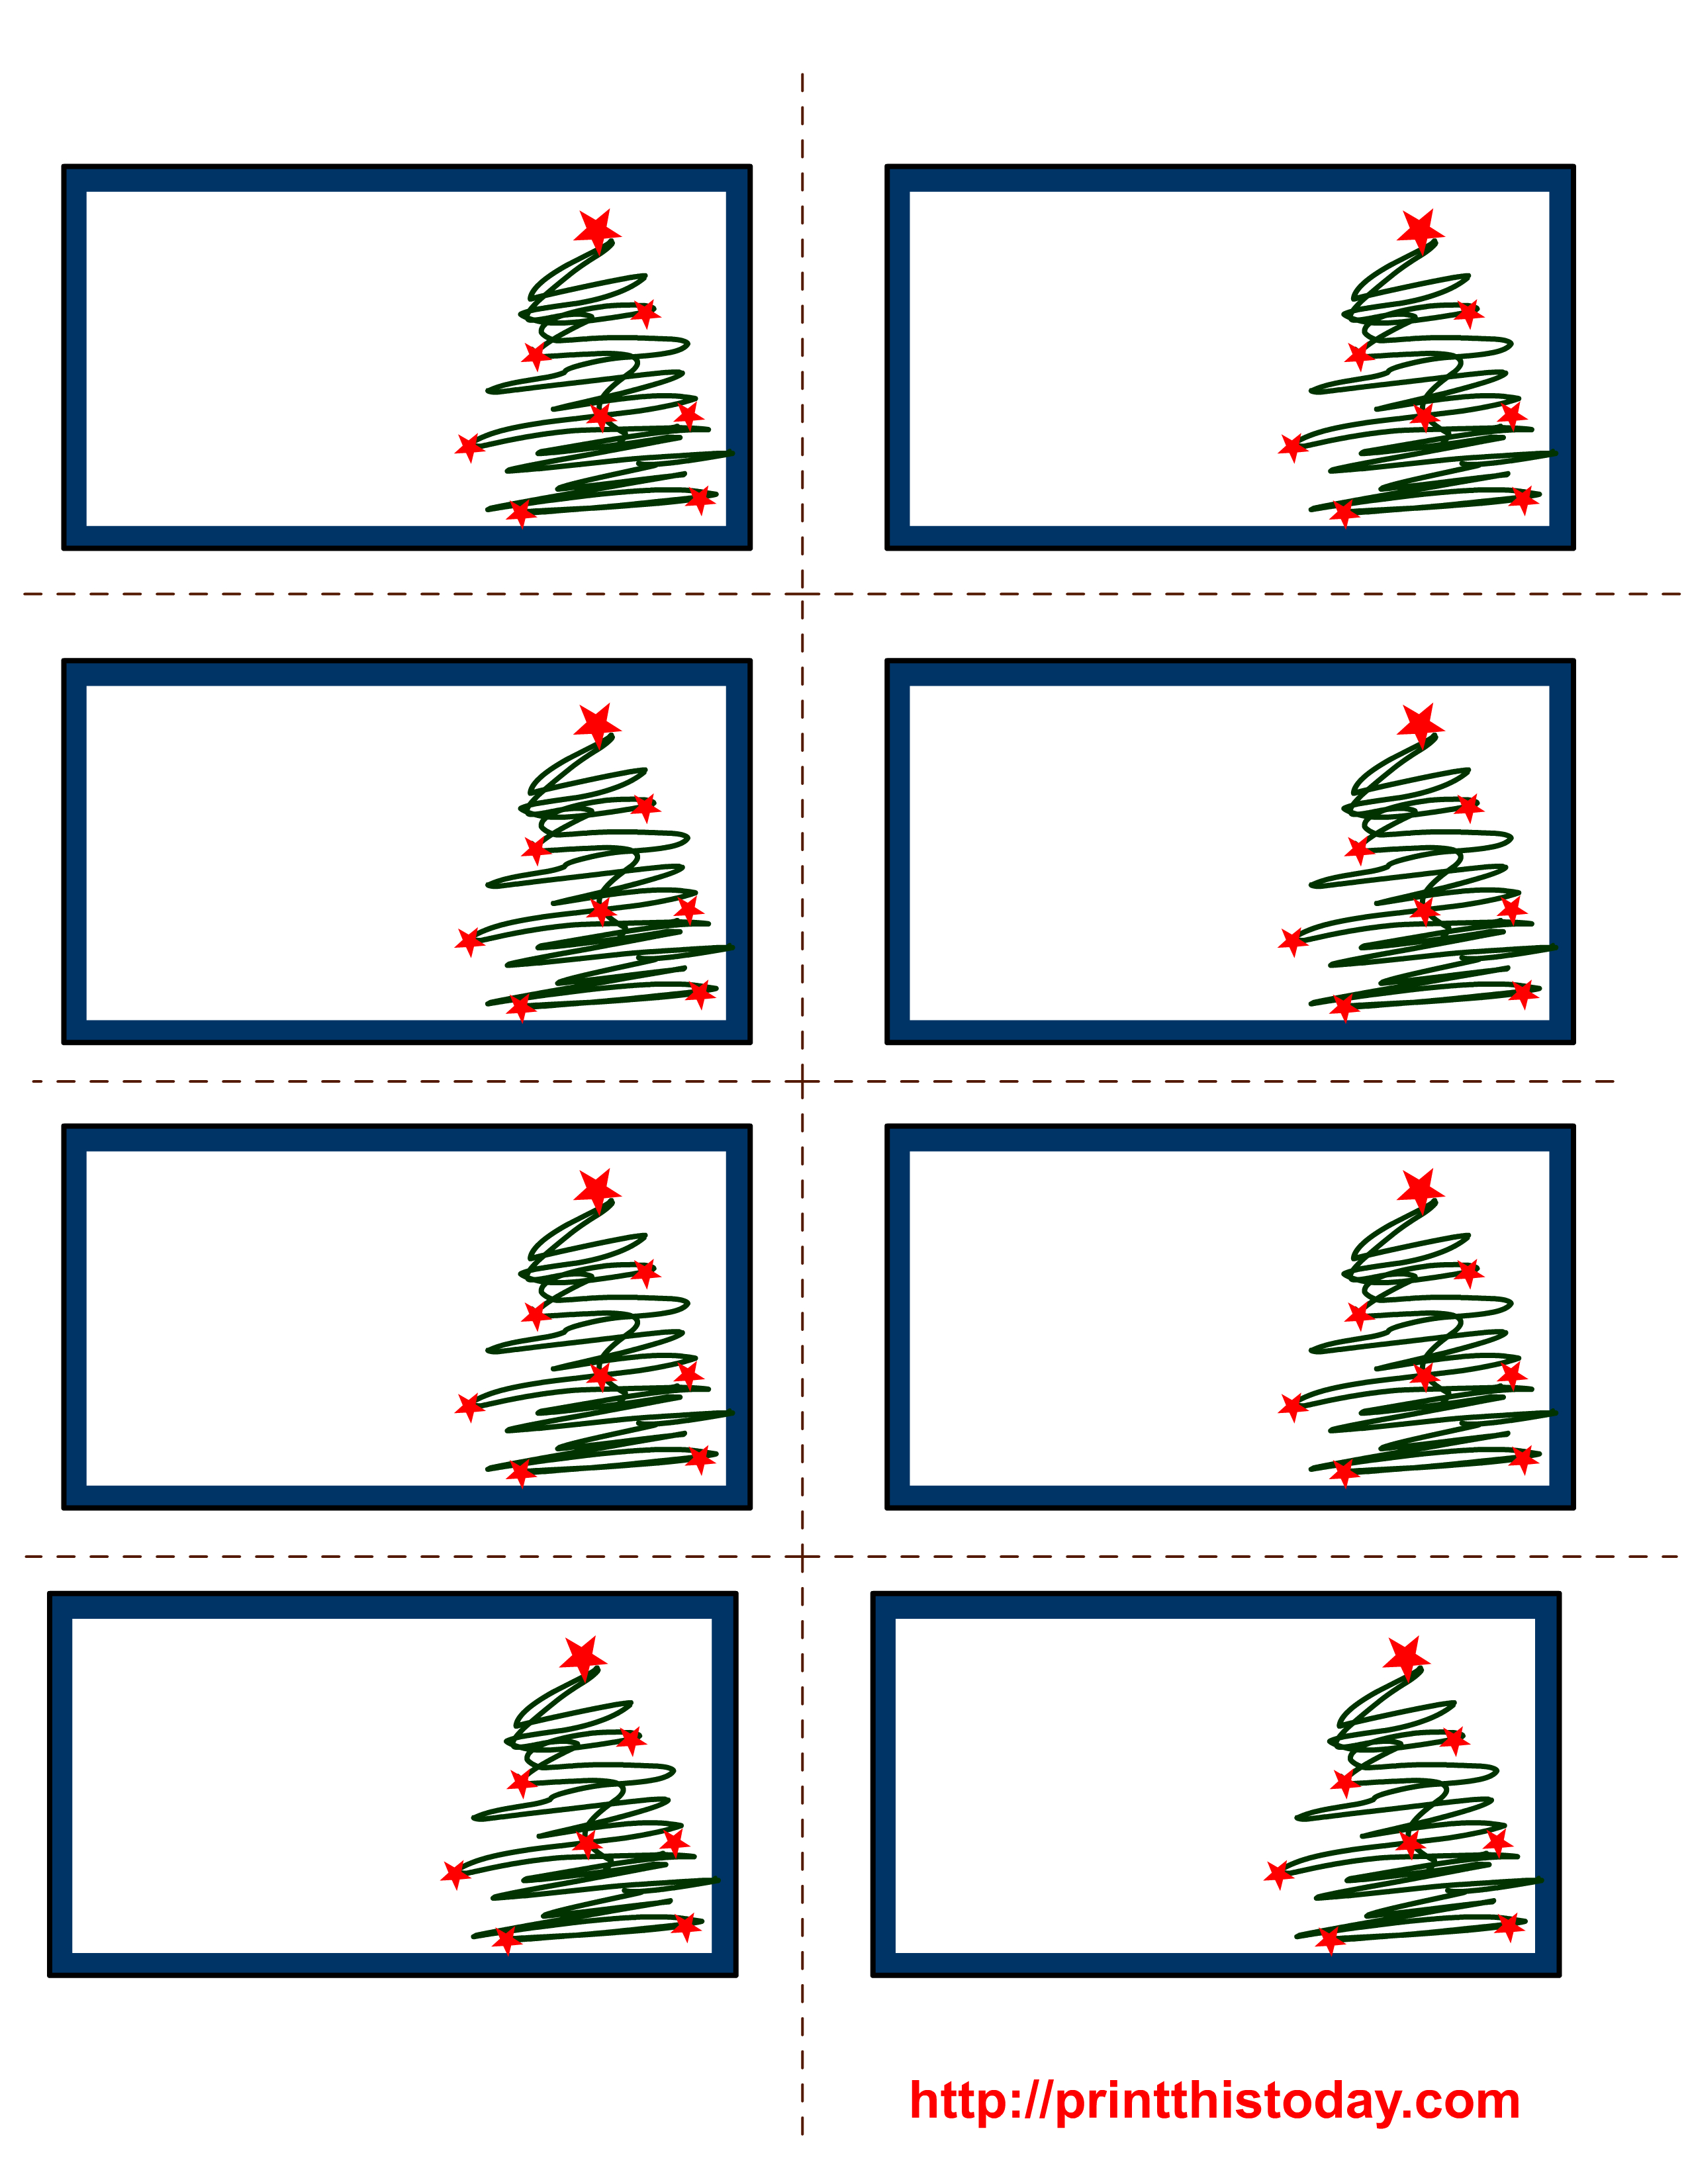 Free Labels Printable | Free Printable Christmas Labels With Trees - Free Printable Holiday Labels